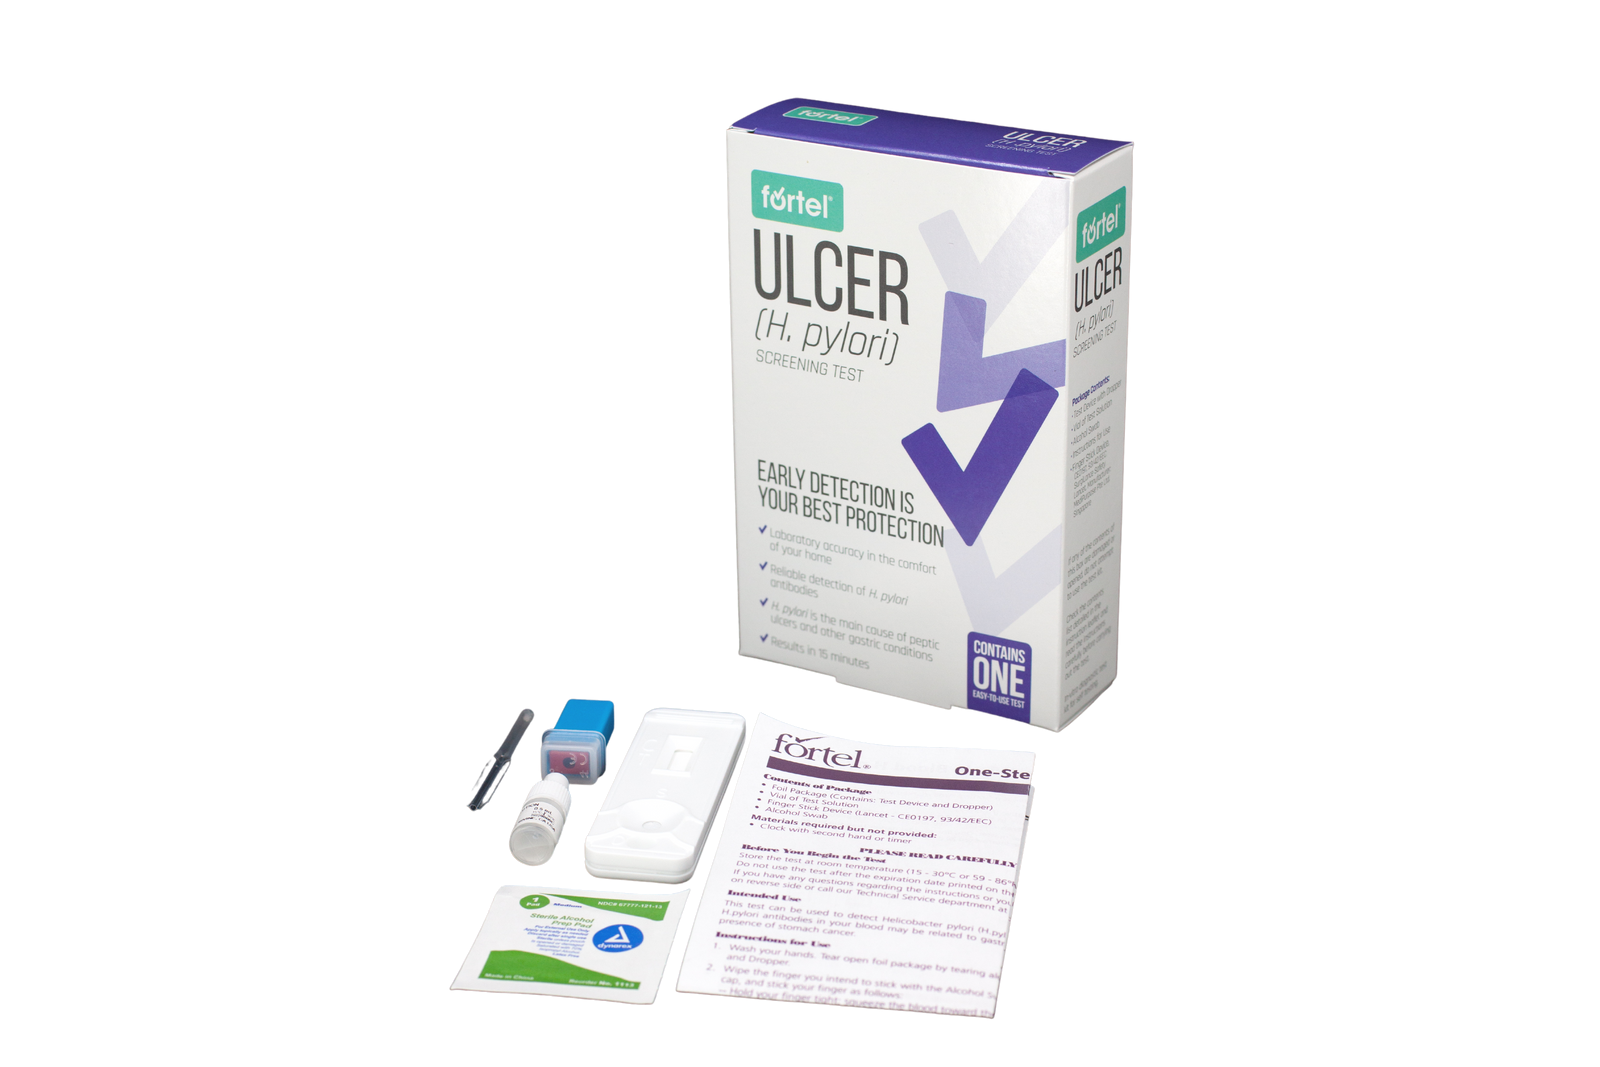 FREE Ulcer (H. pylori) Screening Test